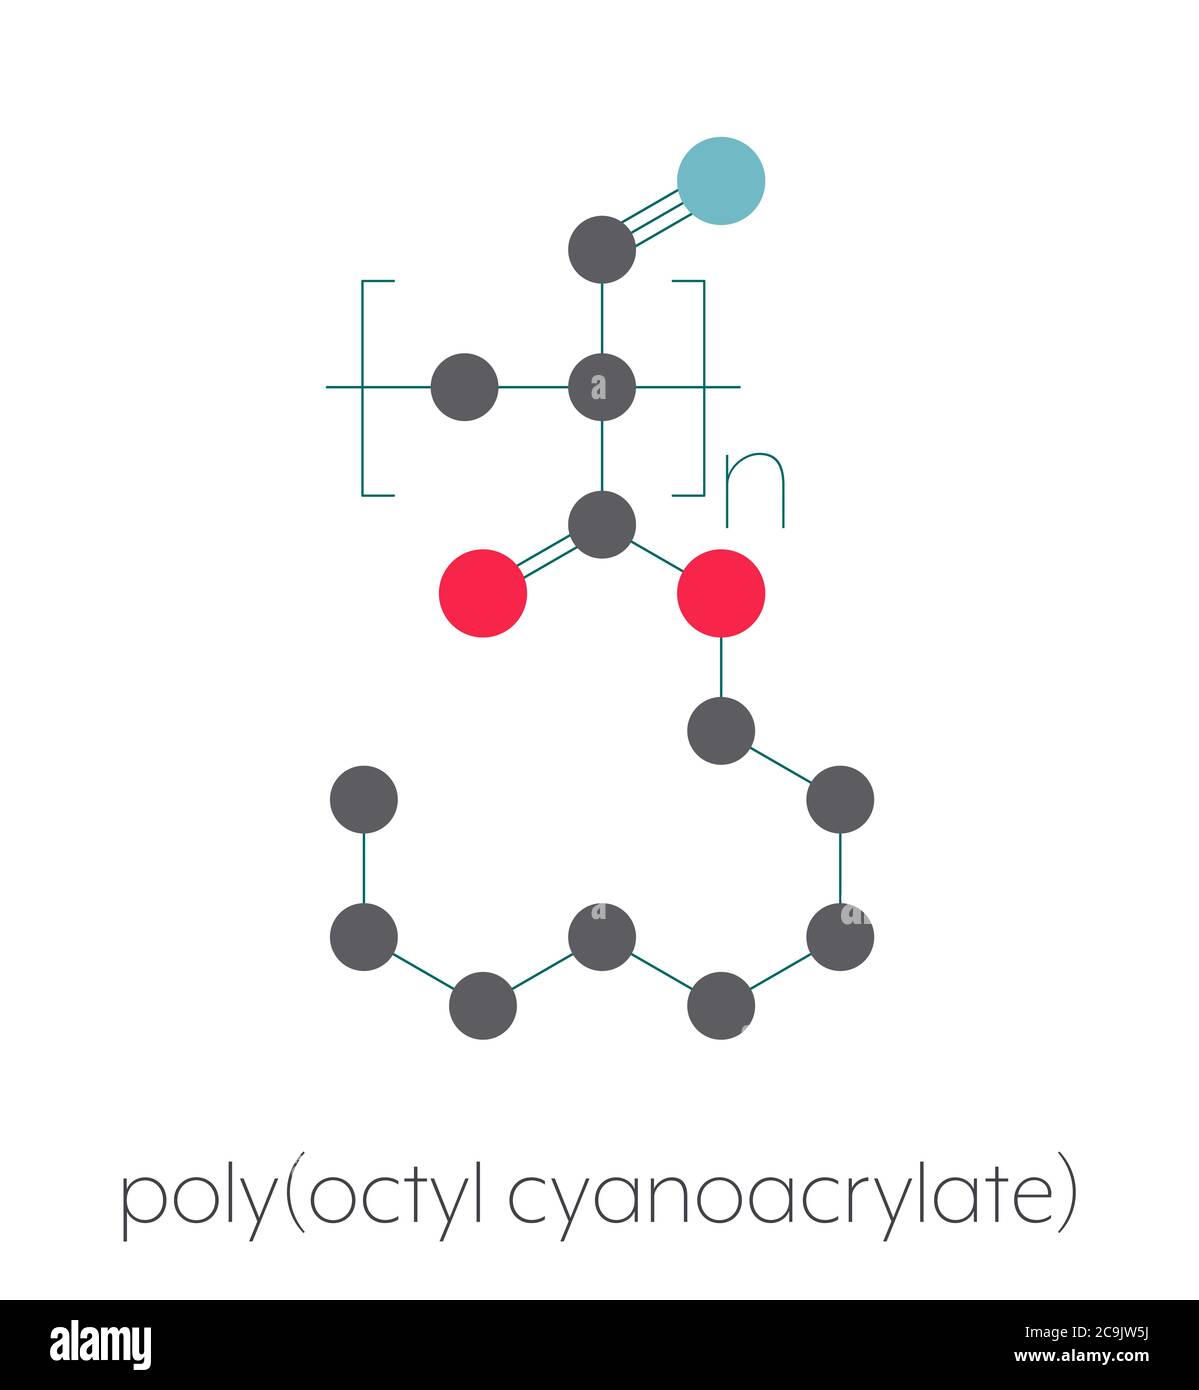 Polyoctyl Cyanacrylat-Polymer, chemische Struktur. Polymerisierte (Set) Form von Octyl Cyanacrylat Instant Leim. Stilisierte Skelettformel: Atome ar Stockfoto